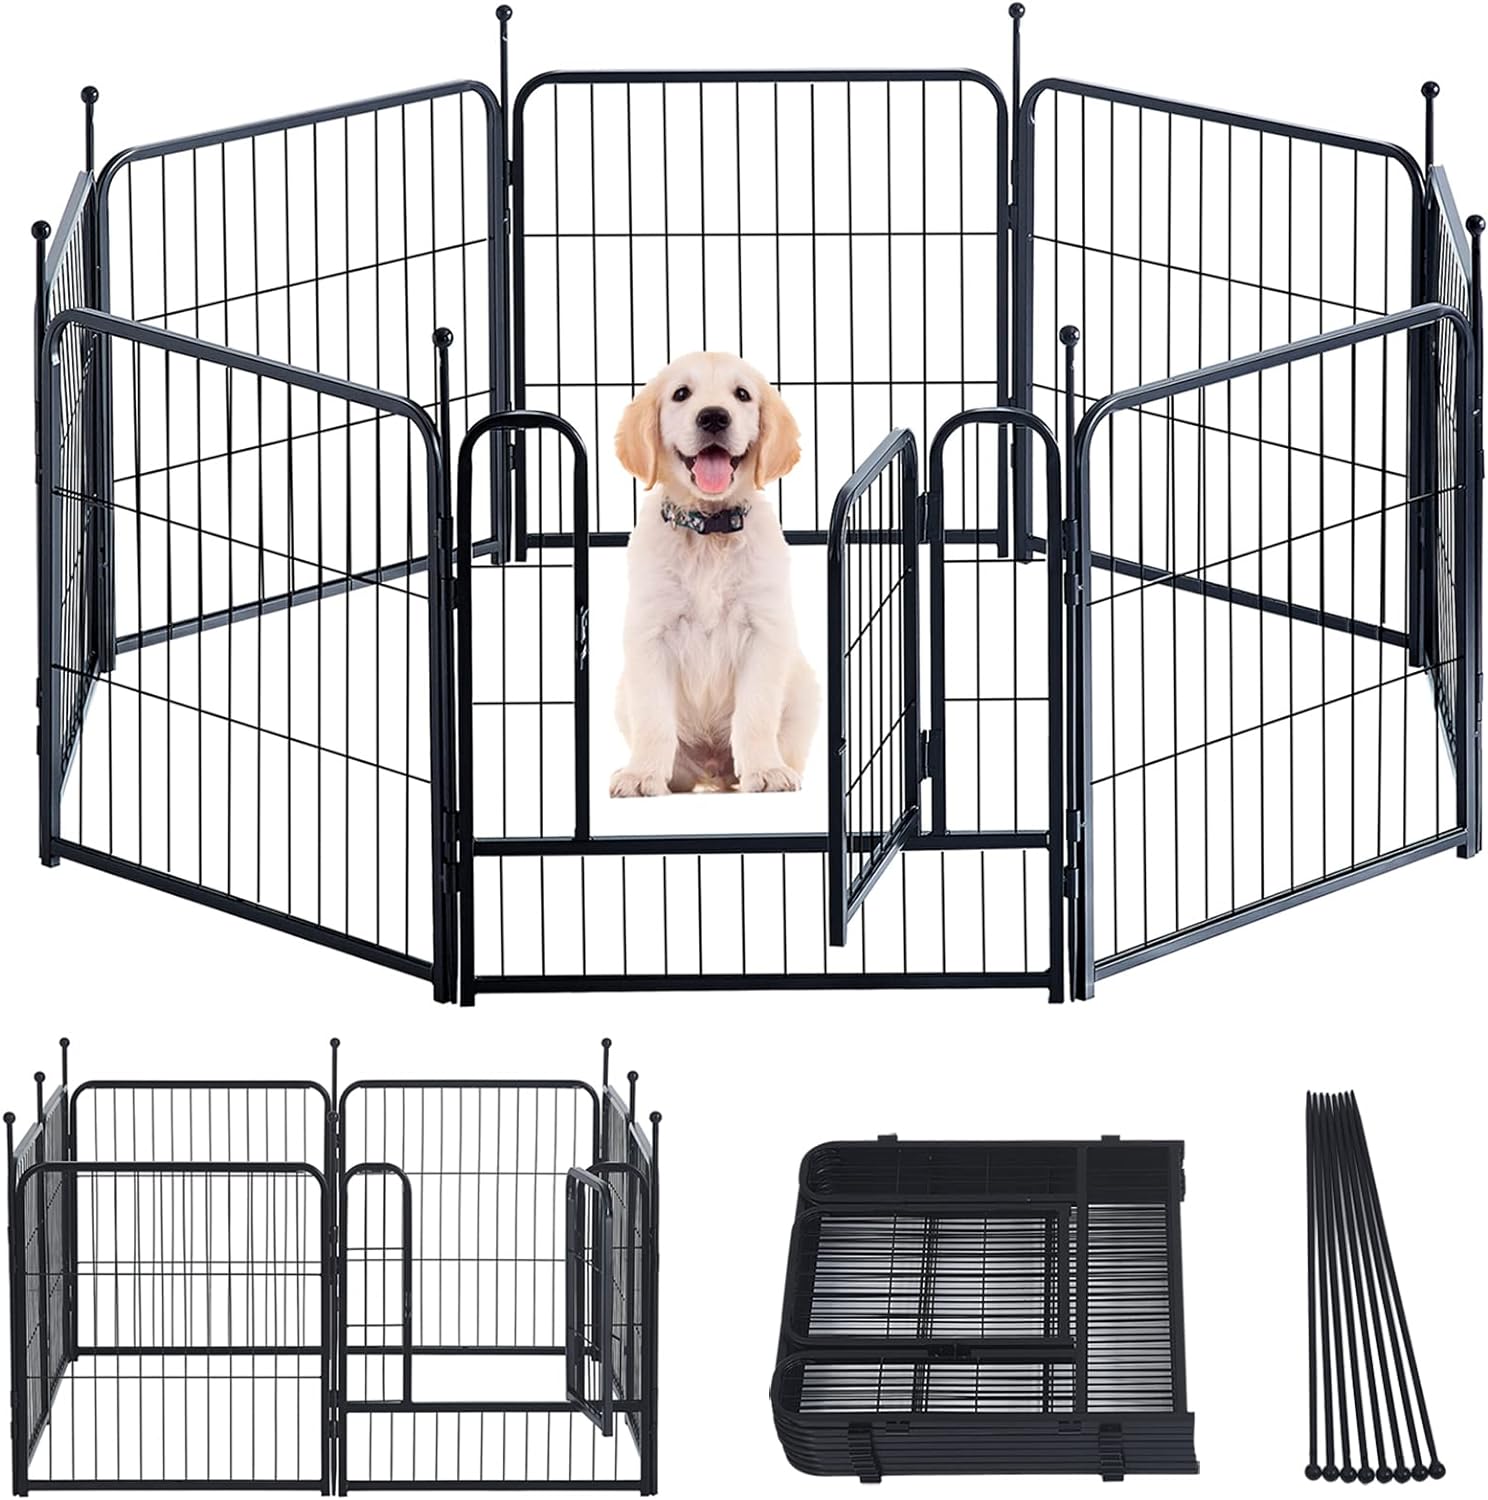  GDKASRNY Corralito portátil para perros, valla de ejercicio de  metal resistente para mascotas, corral para interiores y exteriores, corral  para mascotas para perros pequeños, medianos y grandes, corral de  campamento para